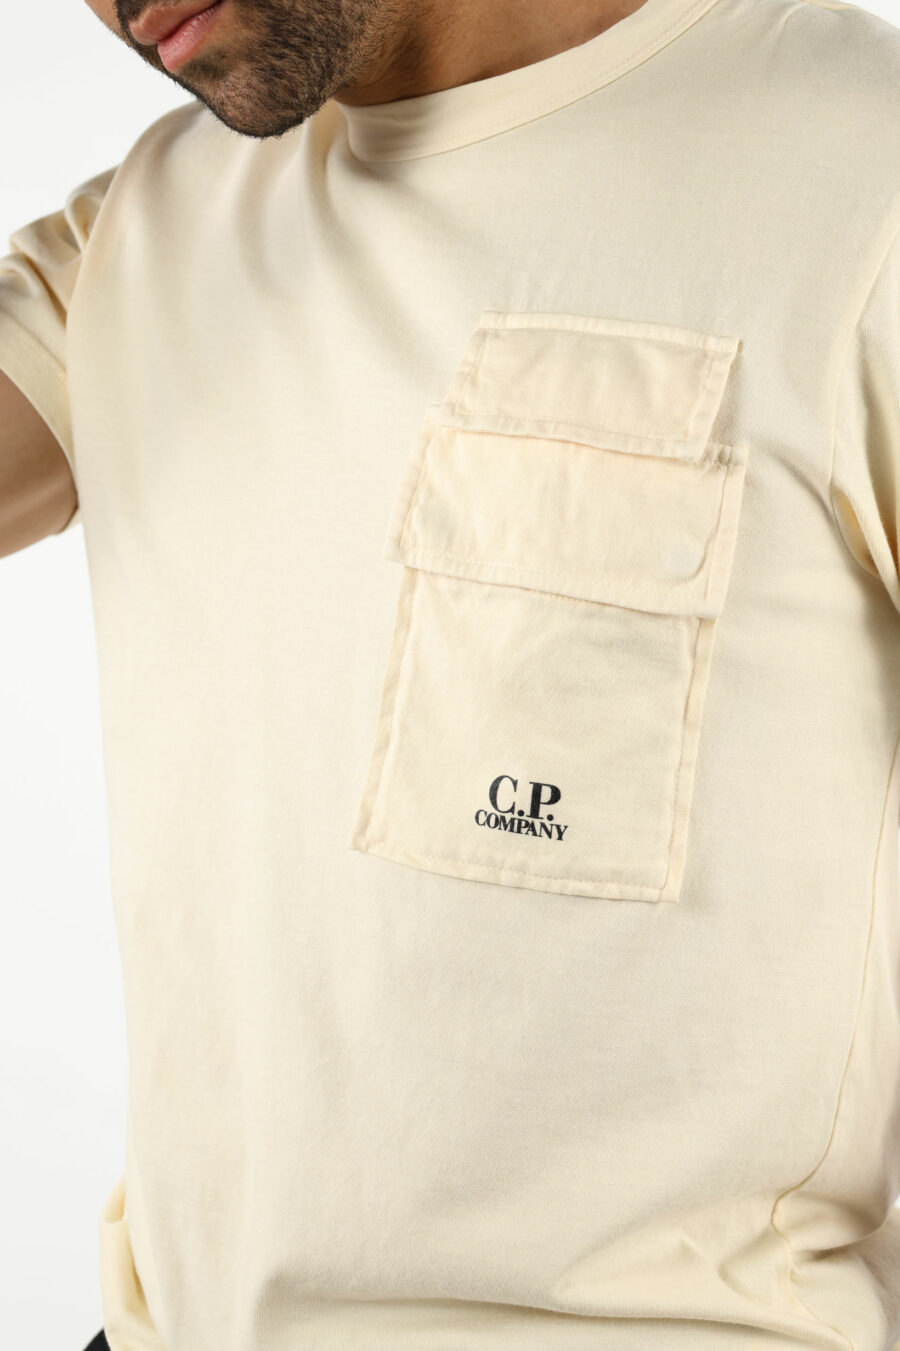 Camiseta beige con bolsillos y minilogo "cp" - 111337